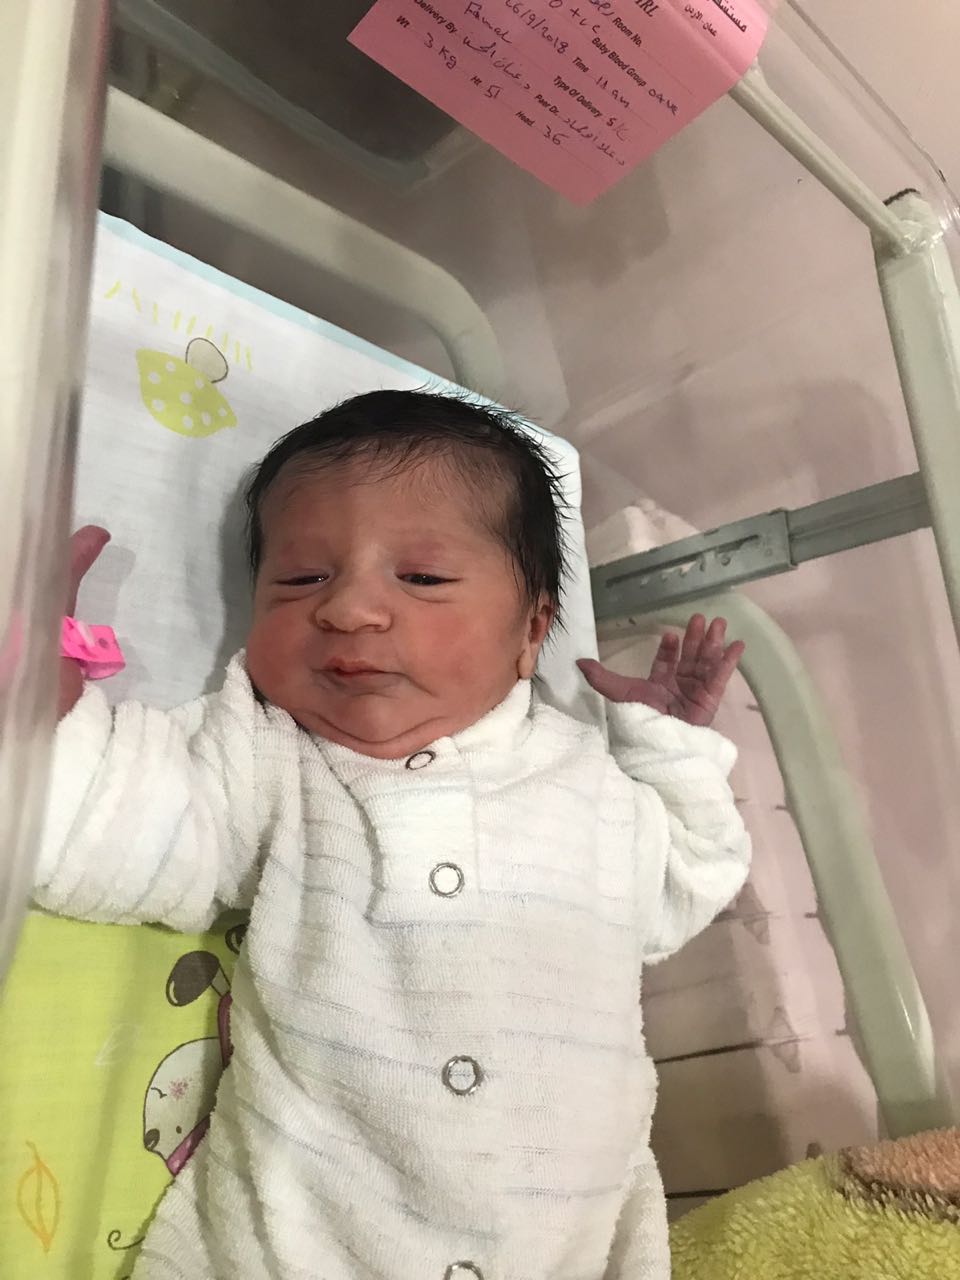 مبارك المولودة الجديدة "نايا مهند اسكندراني"